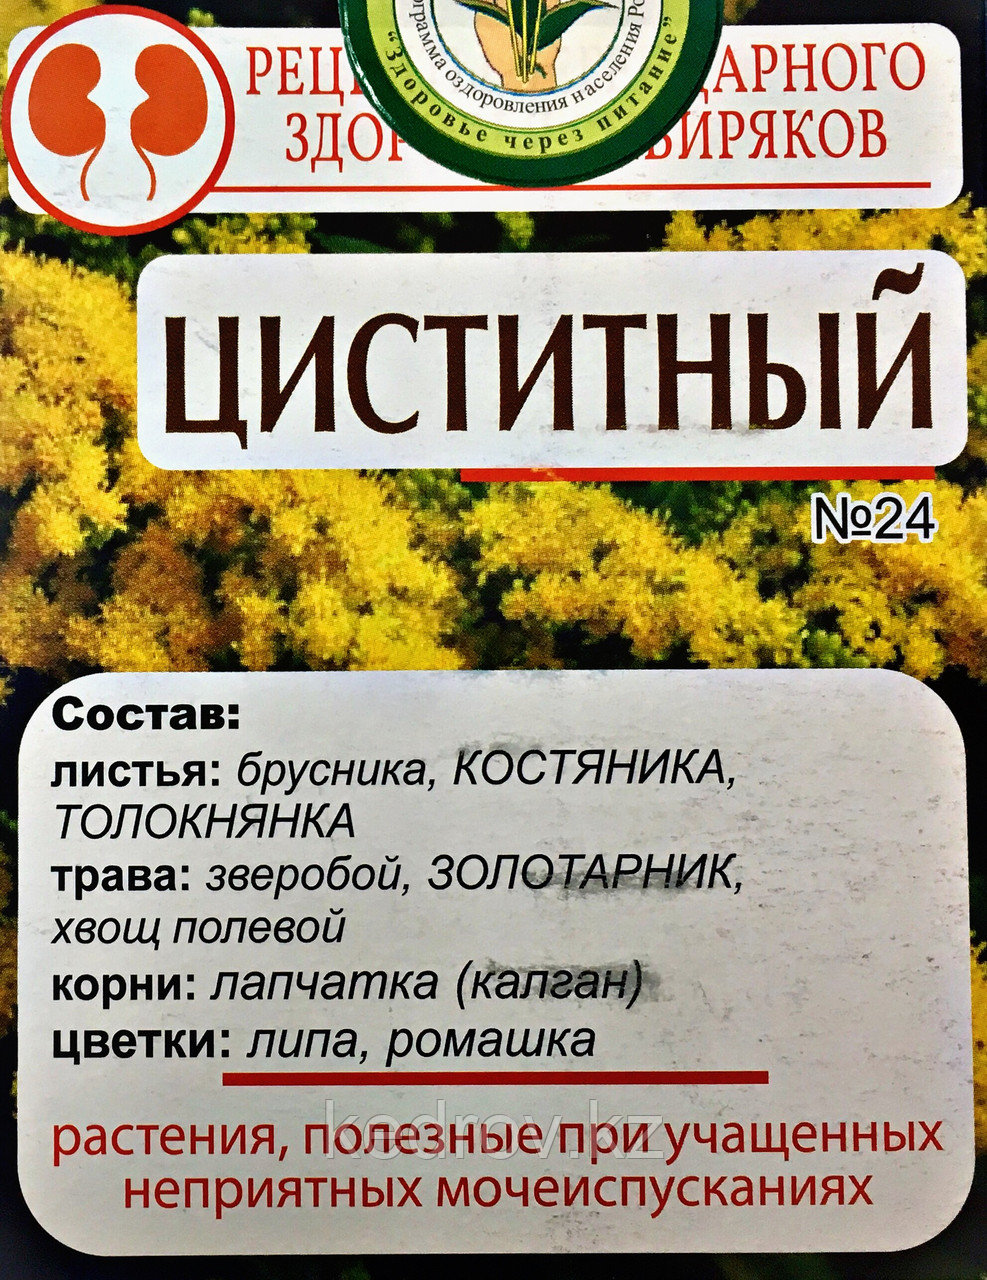 Народный Чай №24 Циститный, 40 г (20 ф/п по 2,0 г)